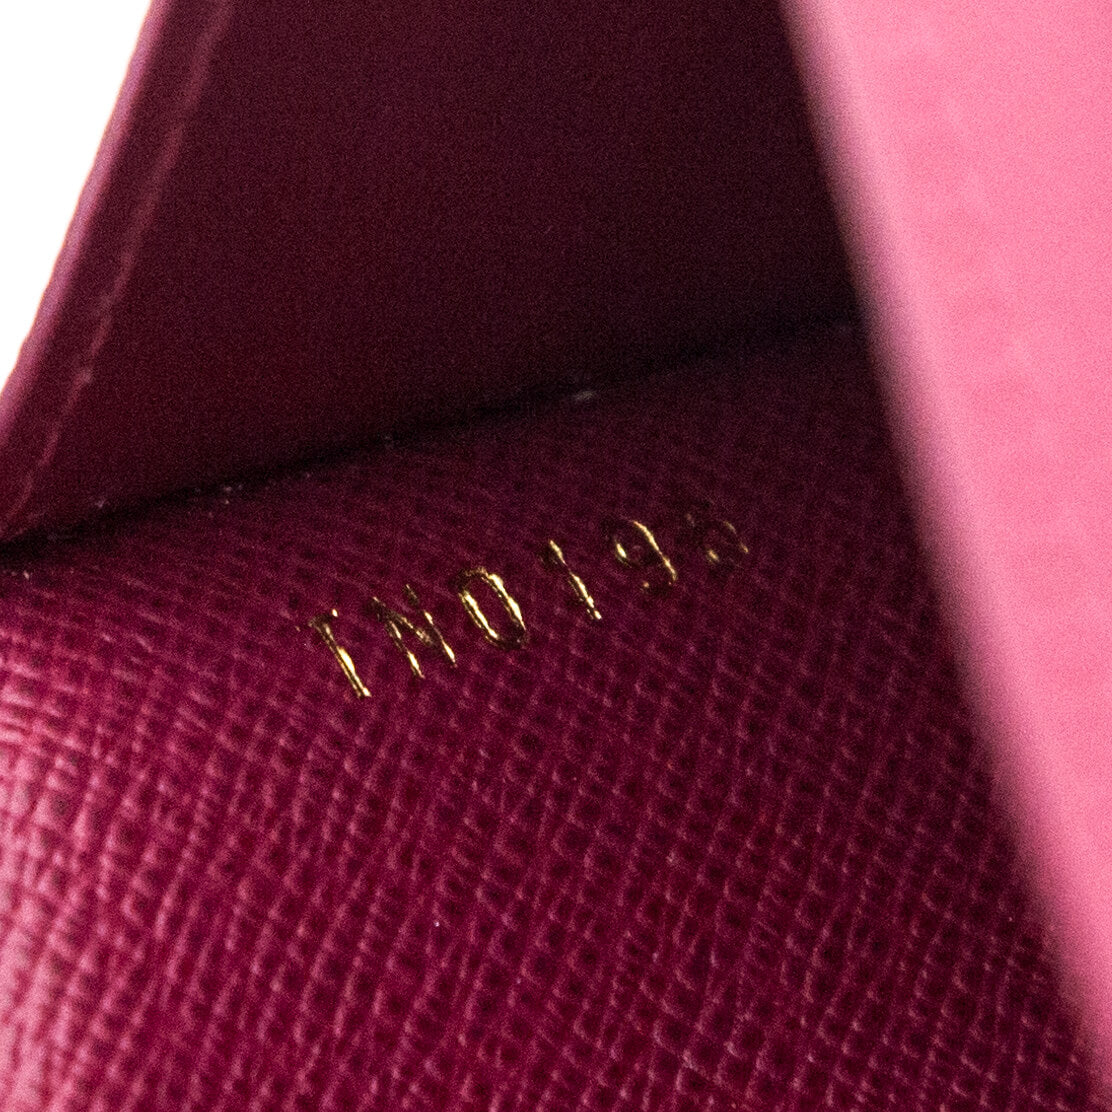 Louis Vuitton Monogram Canvas Piment Adele Compact Wallet - Yoogi's Closet